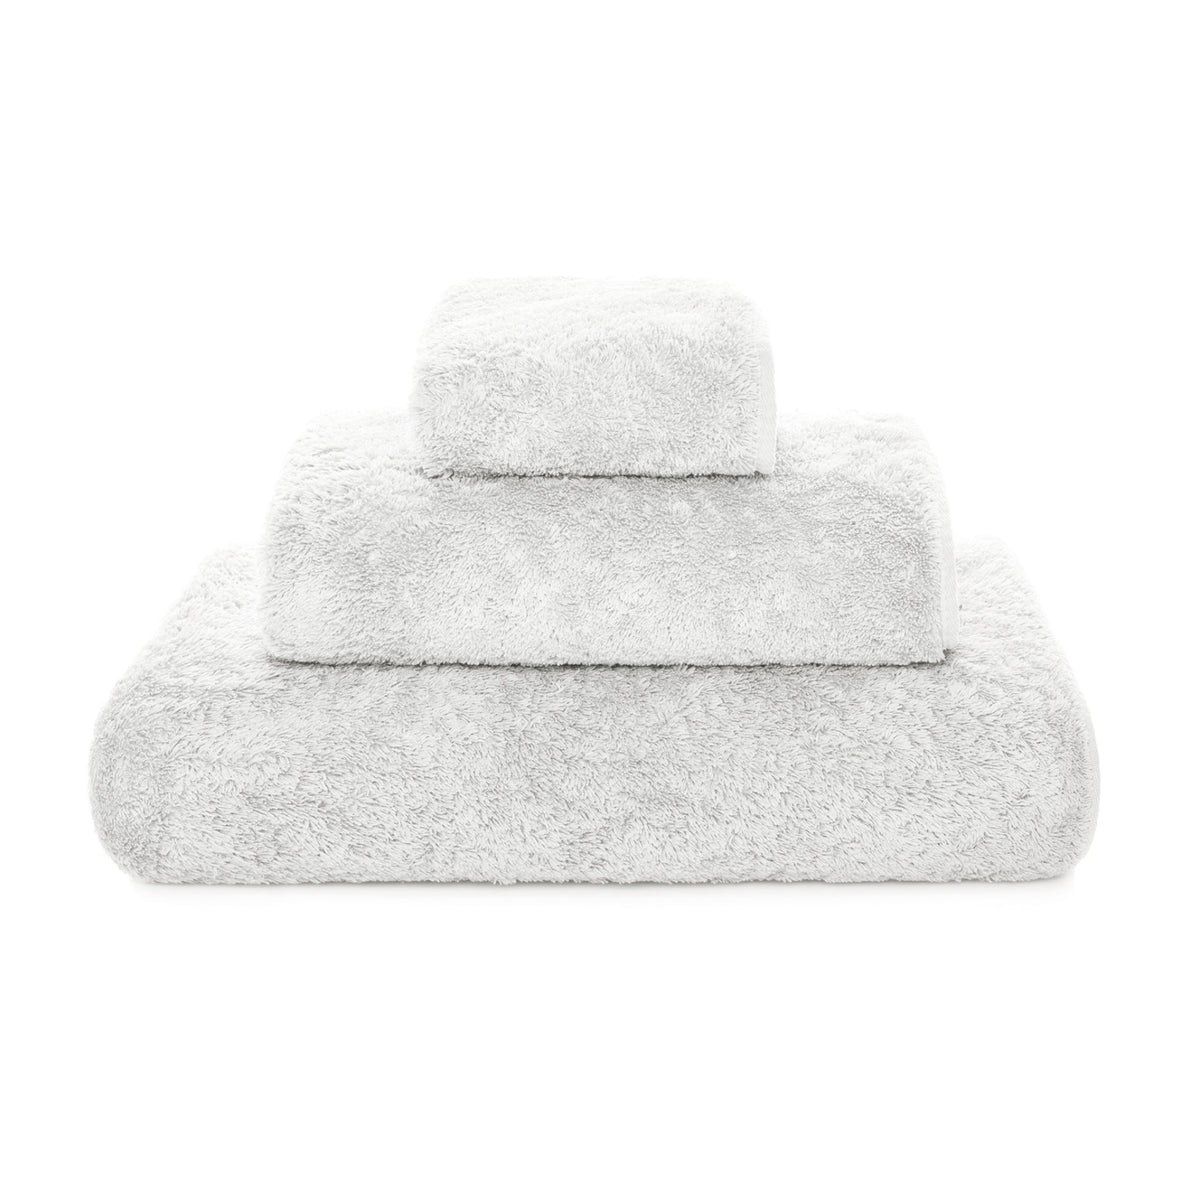 https://flandb.com/cdn/shop/products/Graccioza-Egoist-Bath-Towels-Cloud_1200x.jpg?v=1682505007